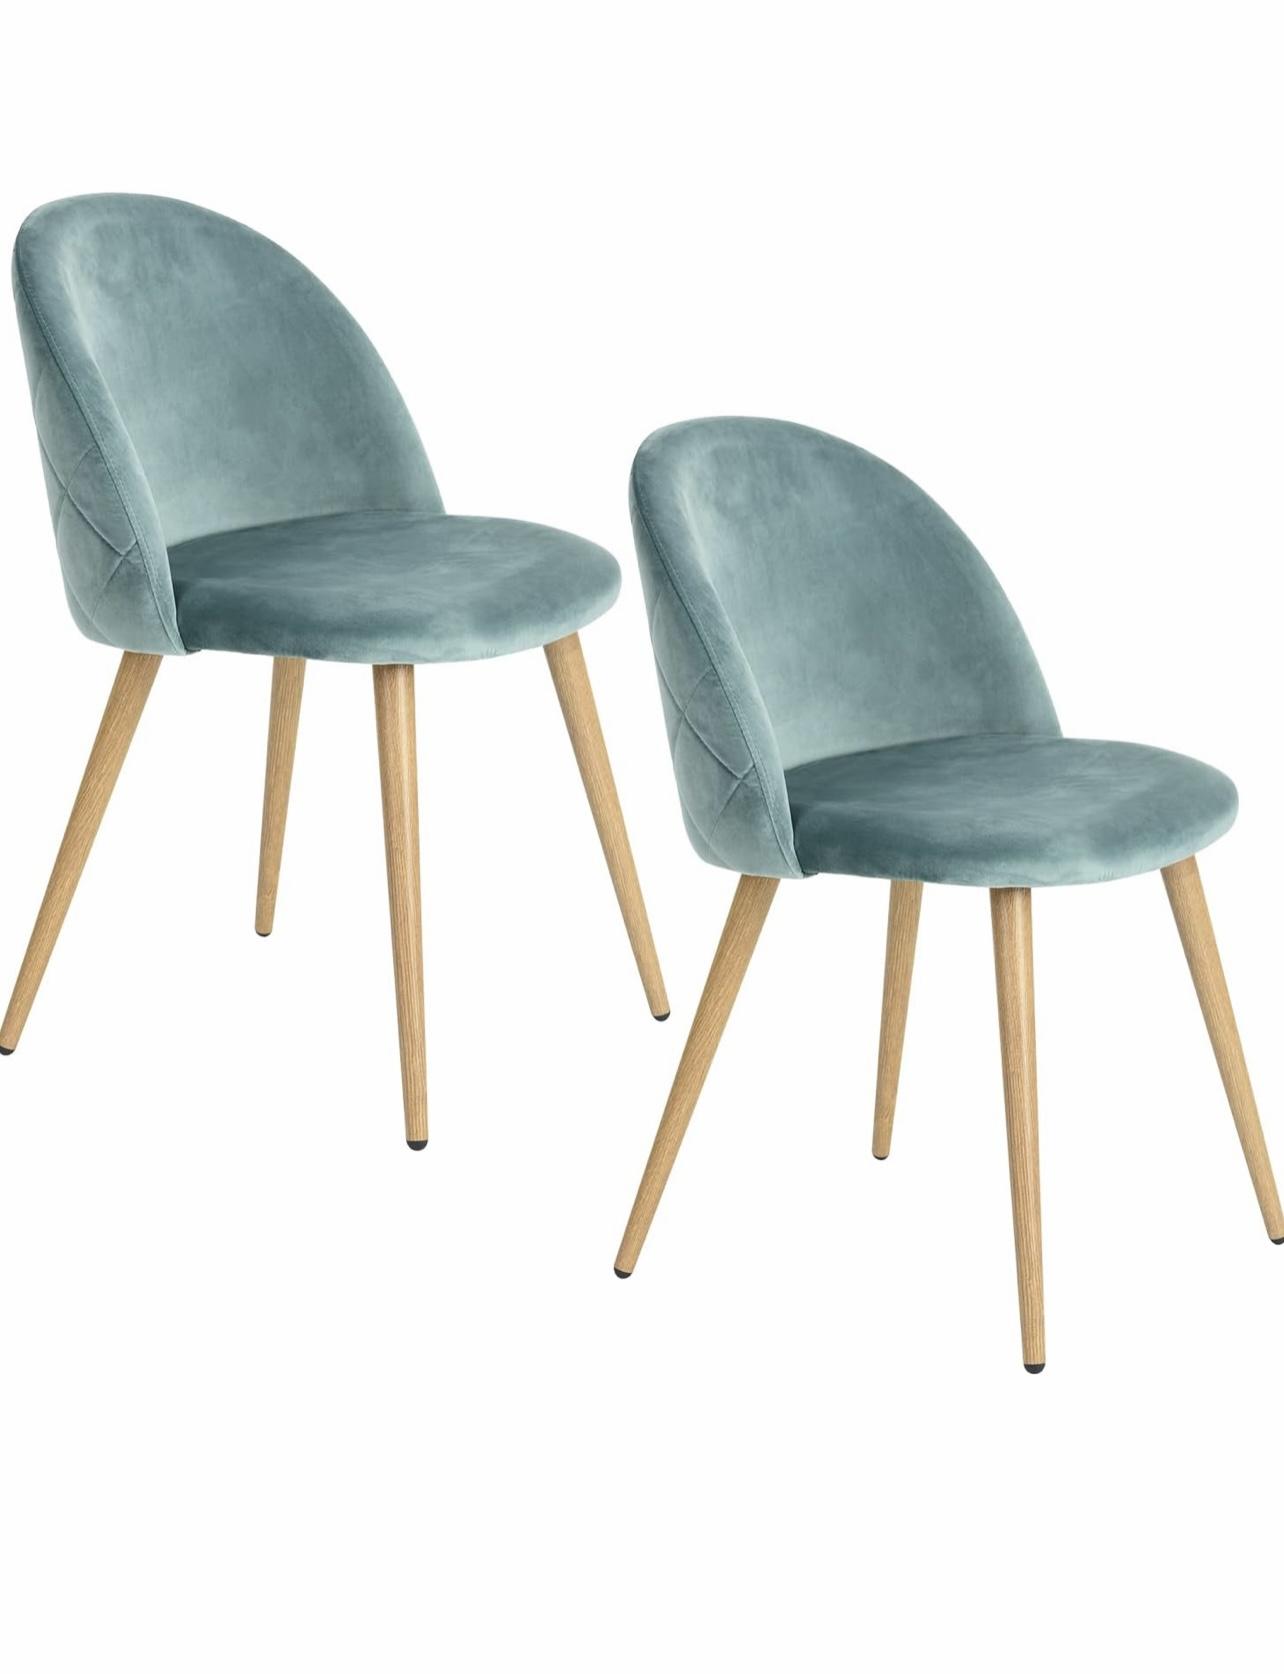 Par de sillas de terciopelo color turquesa  Foto 7188501-3.jpg